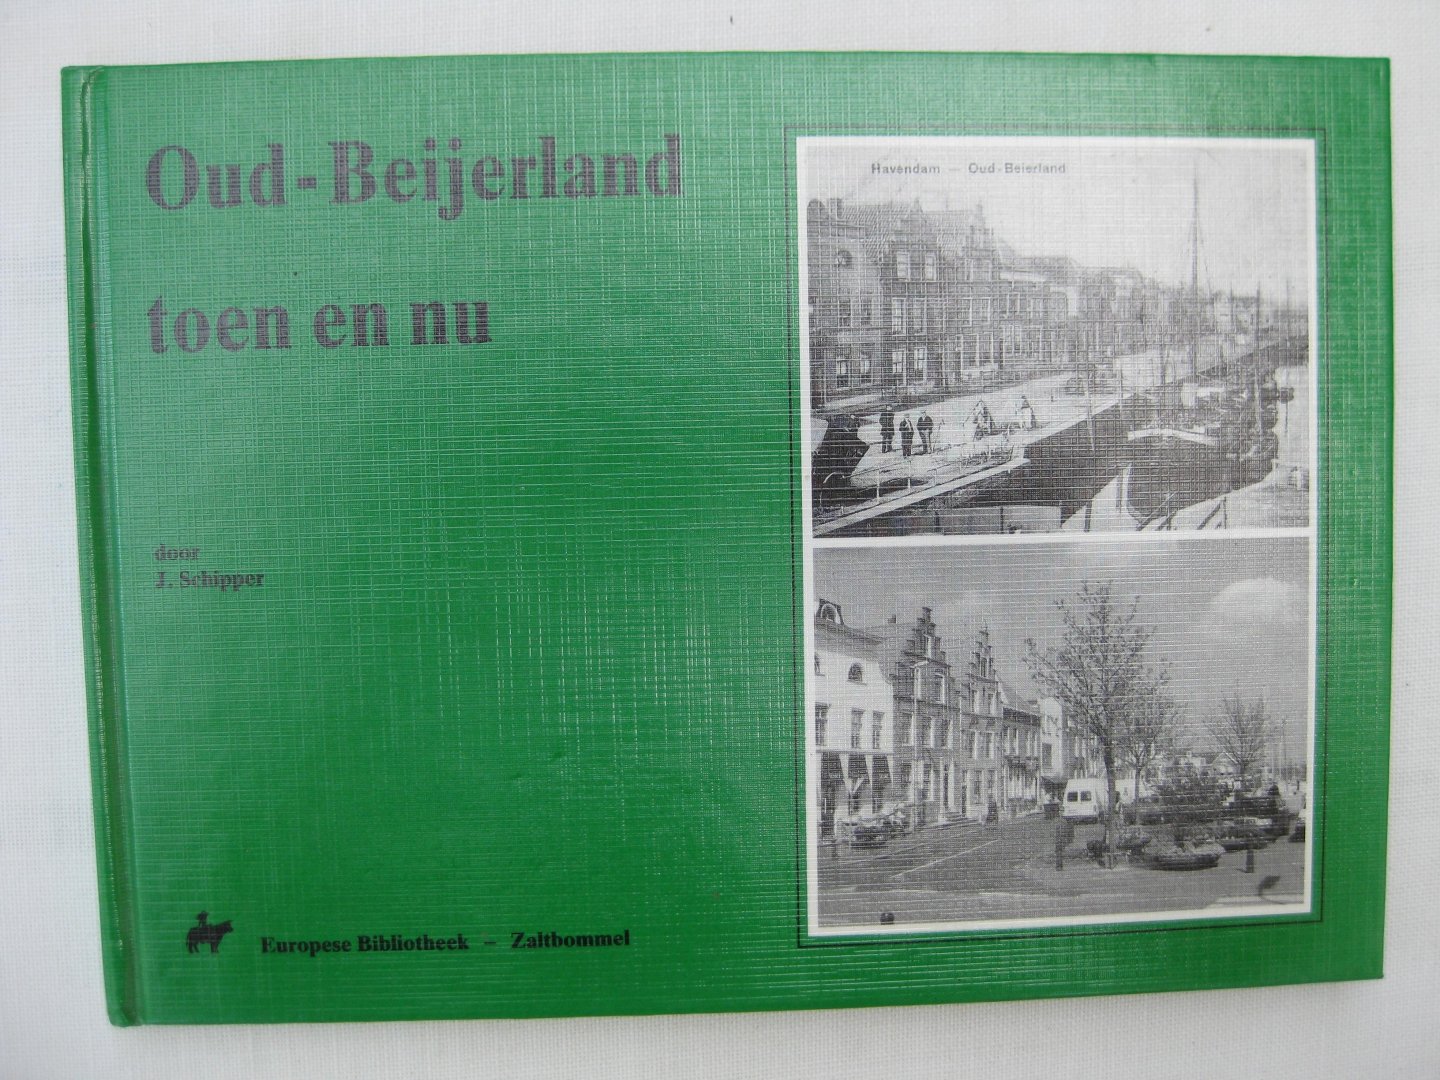 Schipper, J. - Oud-Beijerland toen en nu.